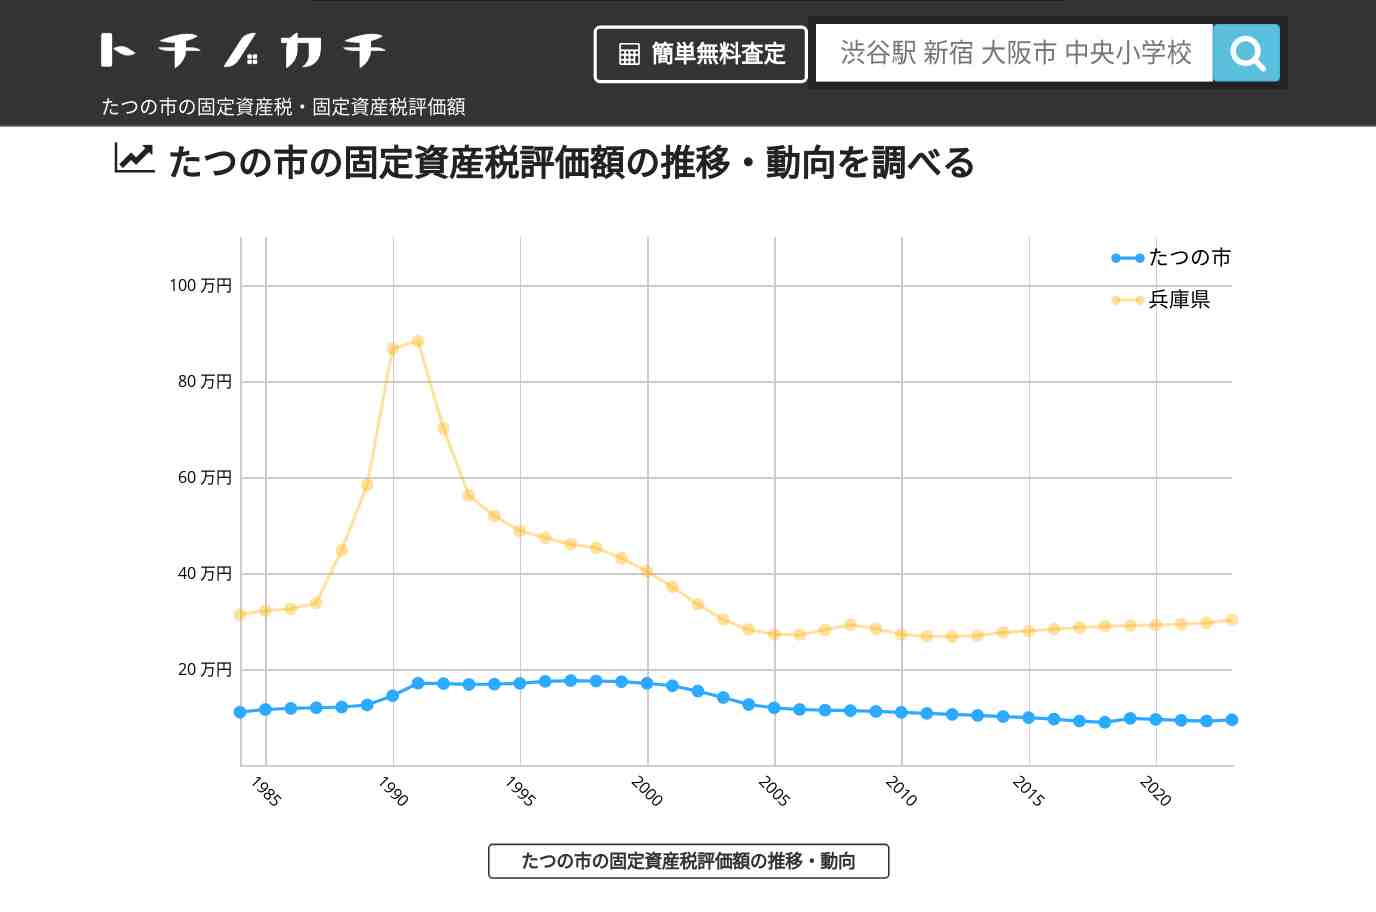 御津中学校(兵庫県 たつの市)周辺の固定資産税・固定資産税評価額 | トチノカチ